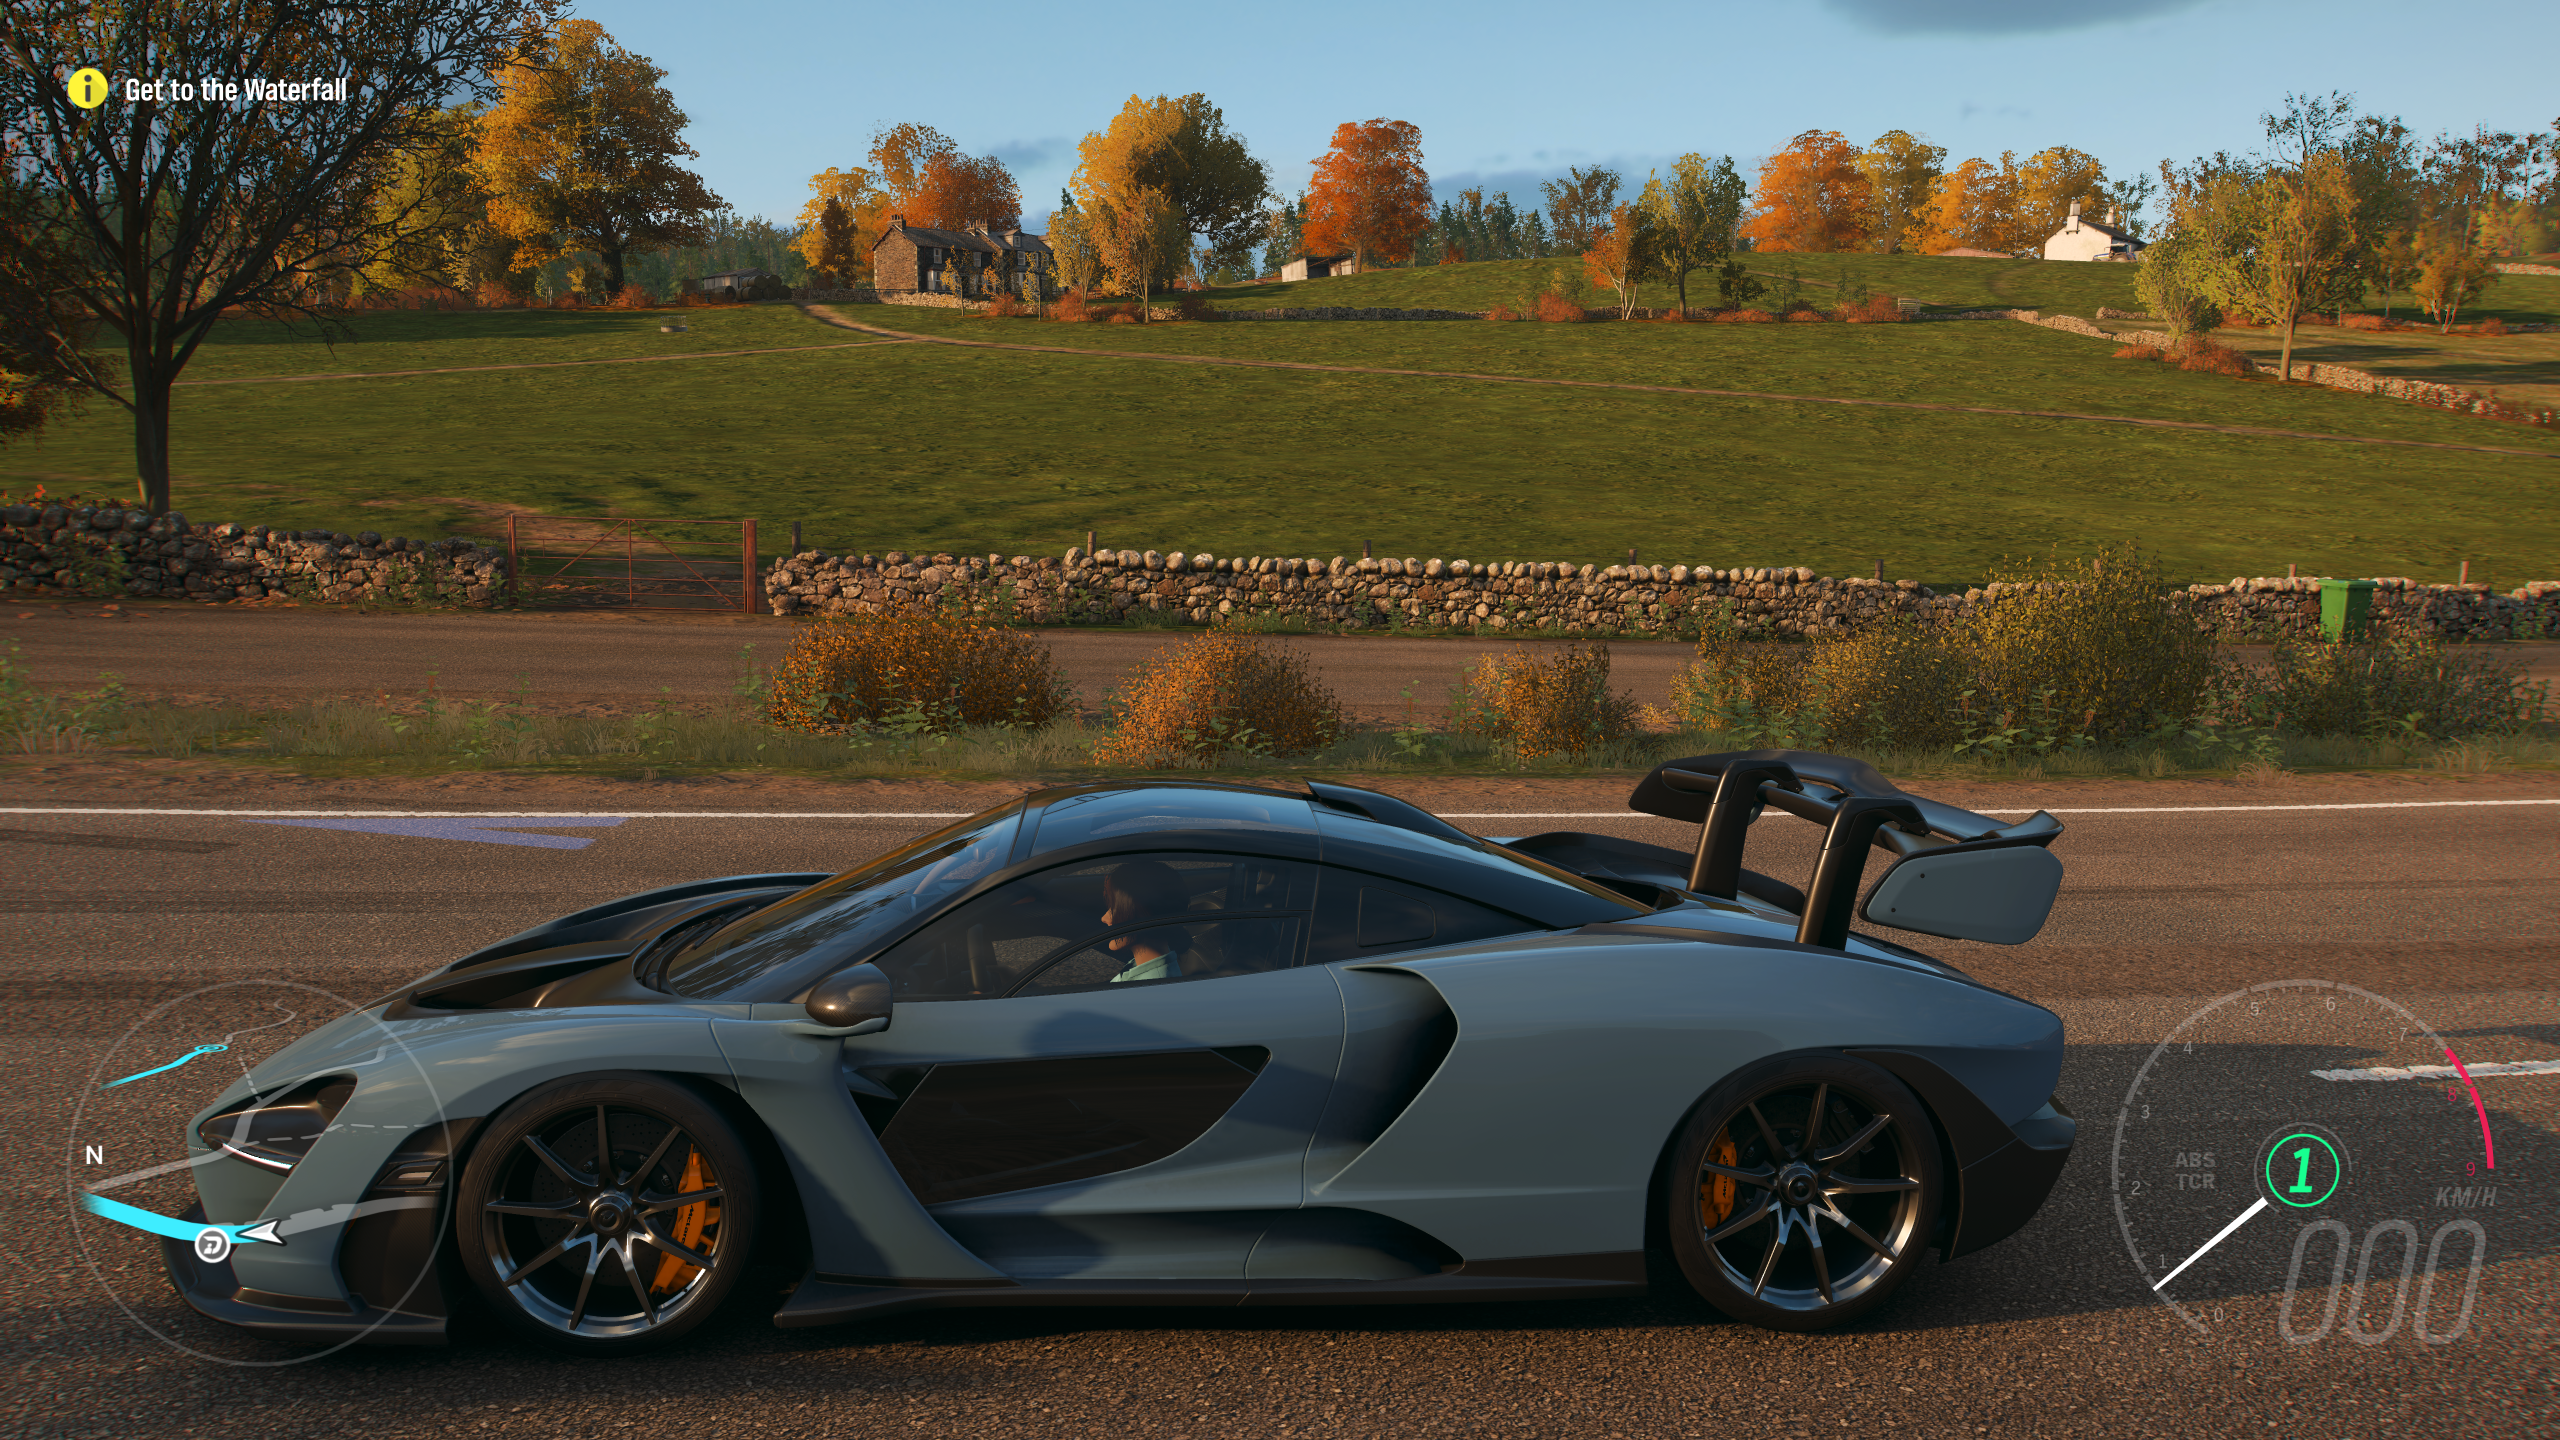 ChCse's blog: Forza Horizon 4 (PC)